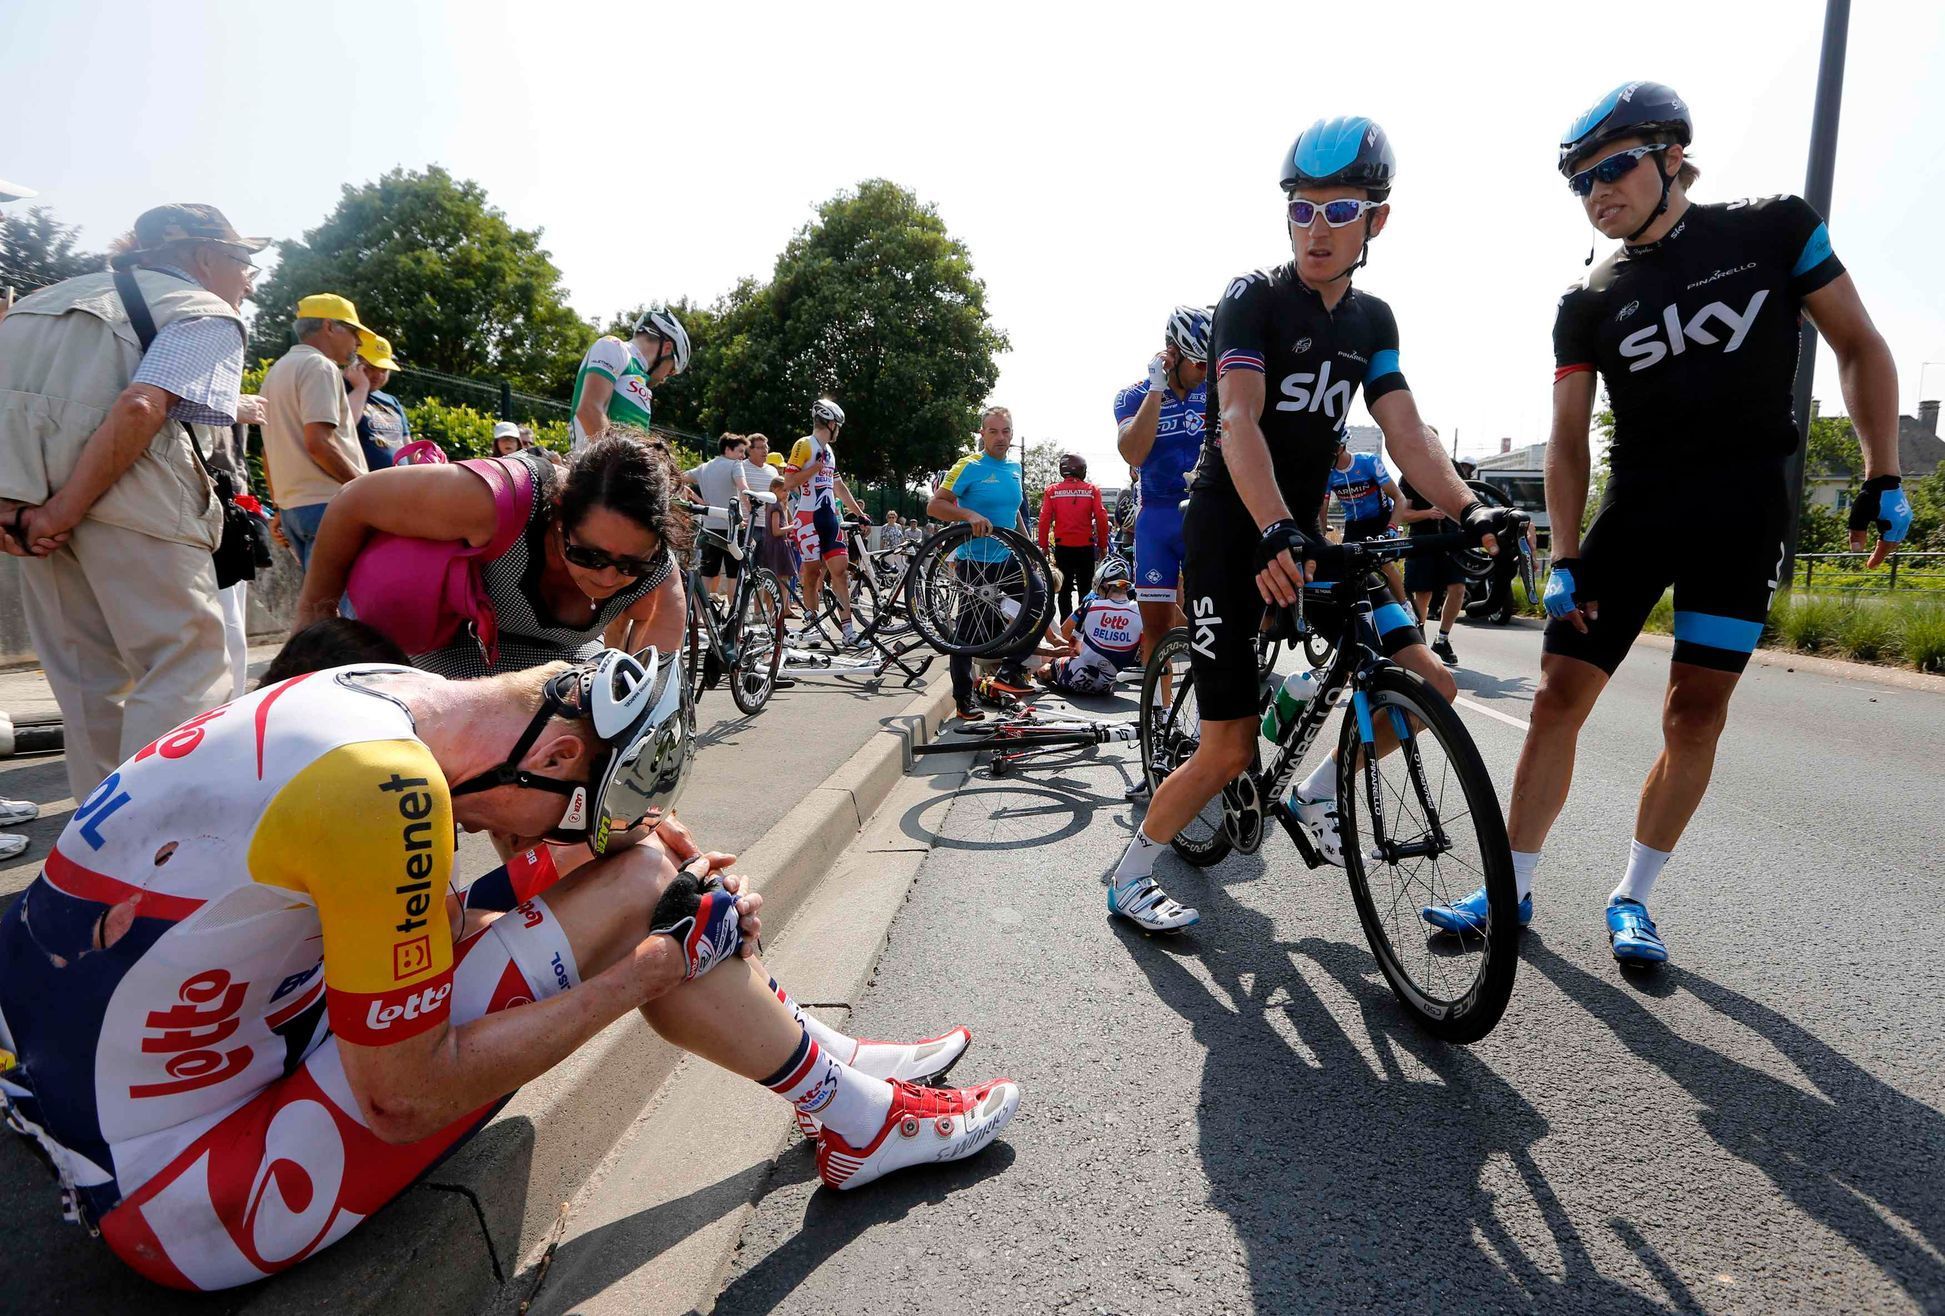 Dvanáctá etapa Tour de France 2013 - hromadný pád